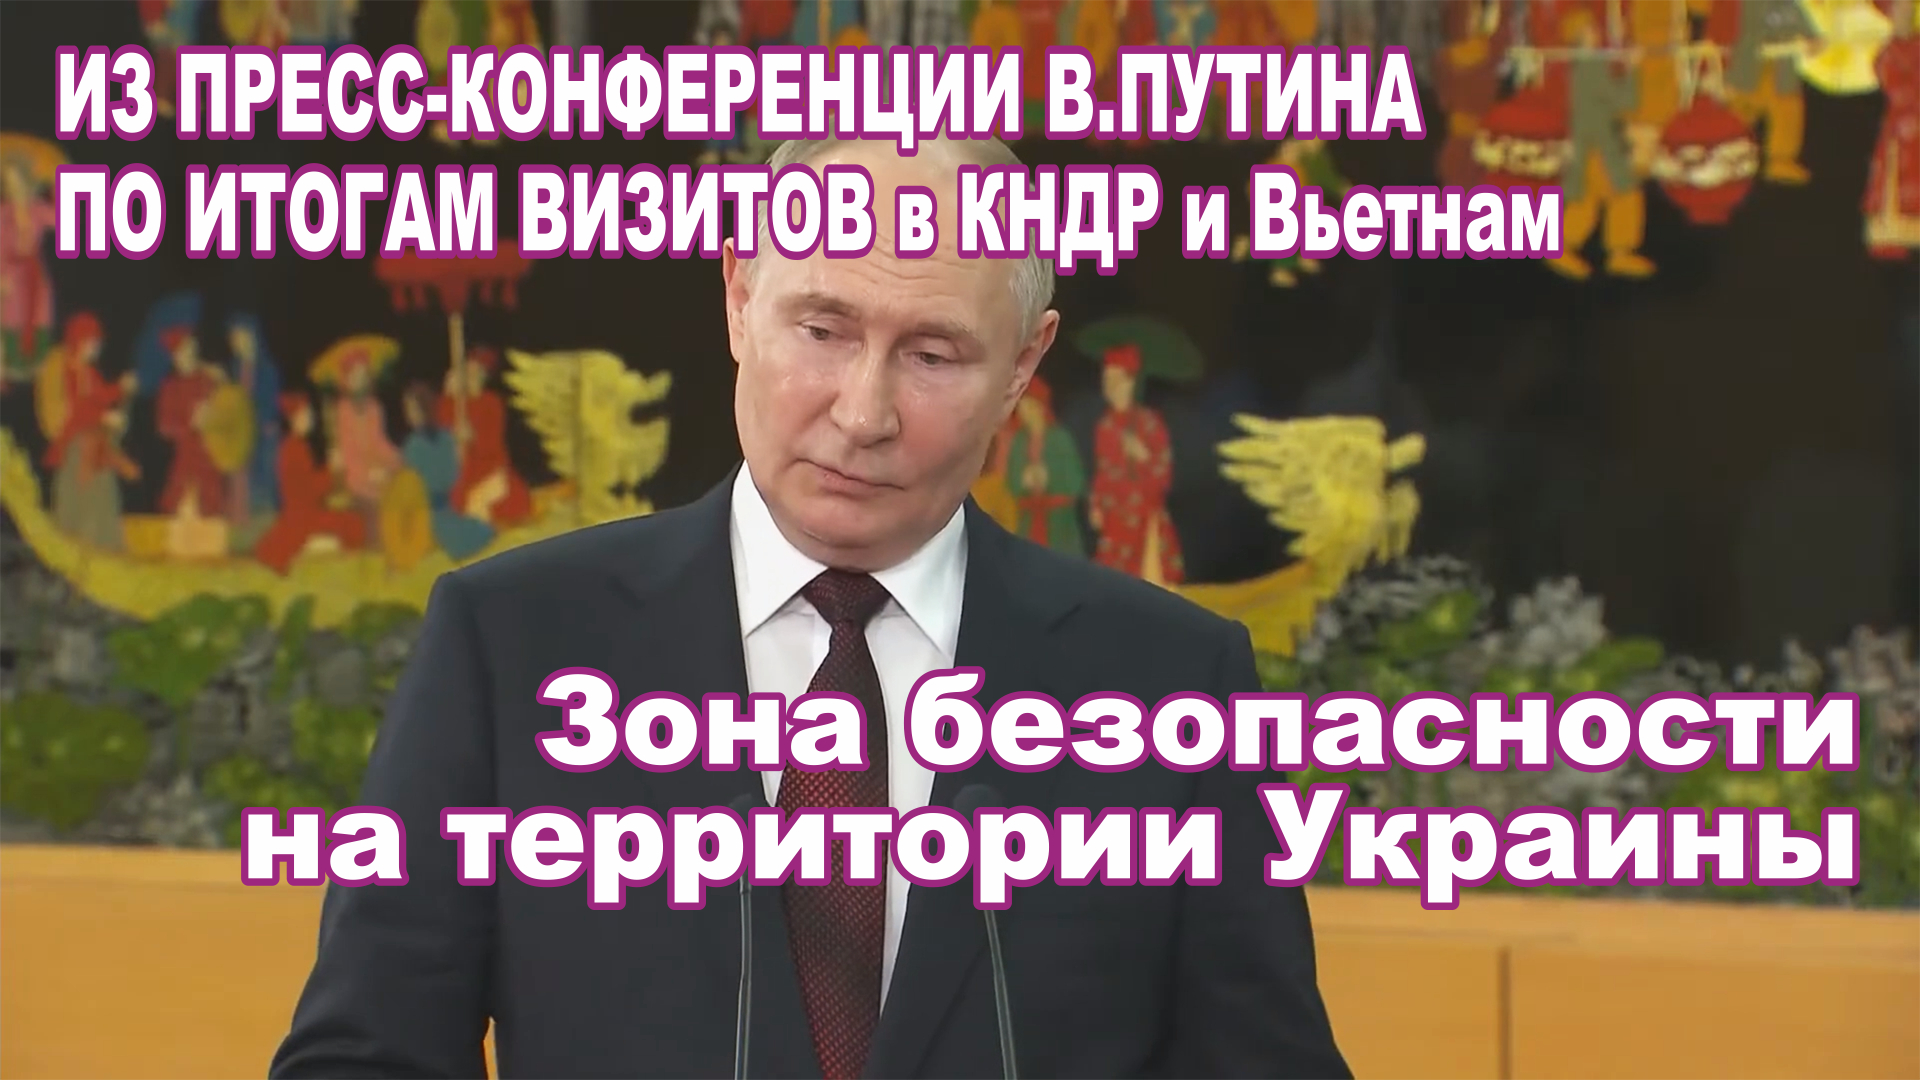 Из пресс-конференции В.Путина по итогам визитов в КНДР и Вьетнам. Зона безопасности на Украине.